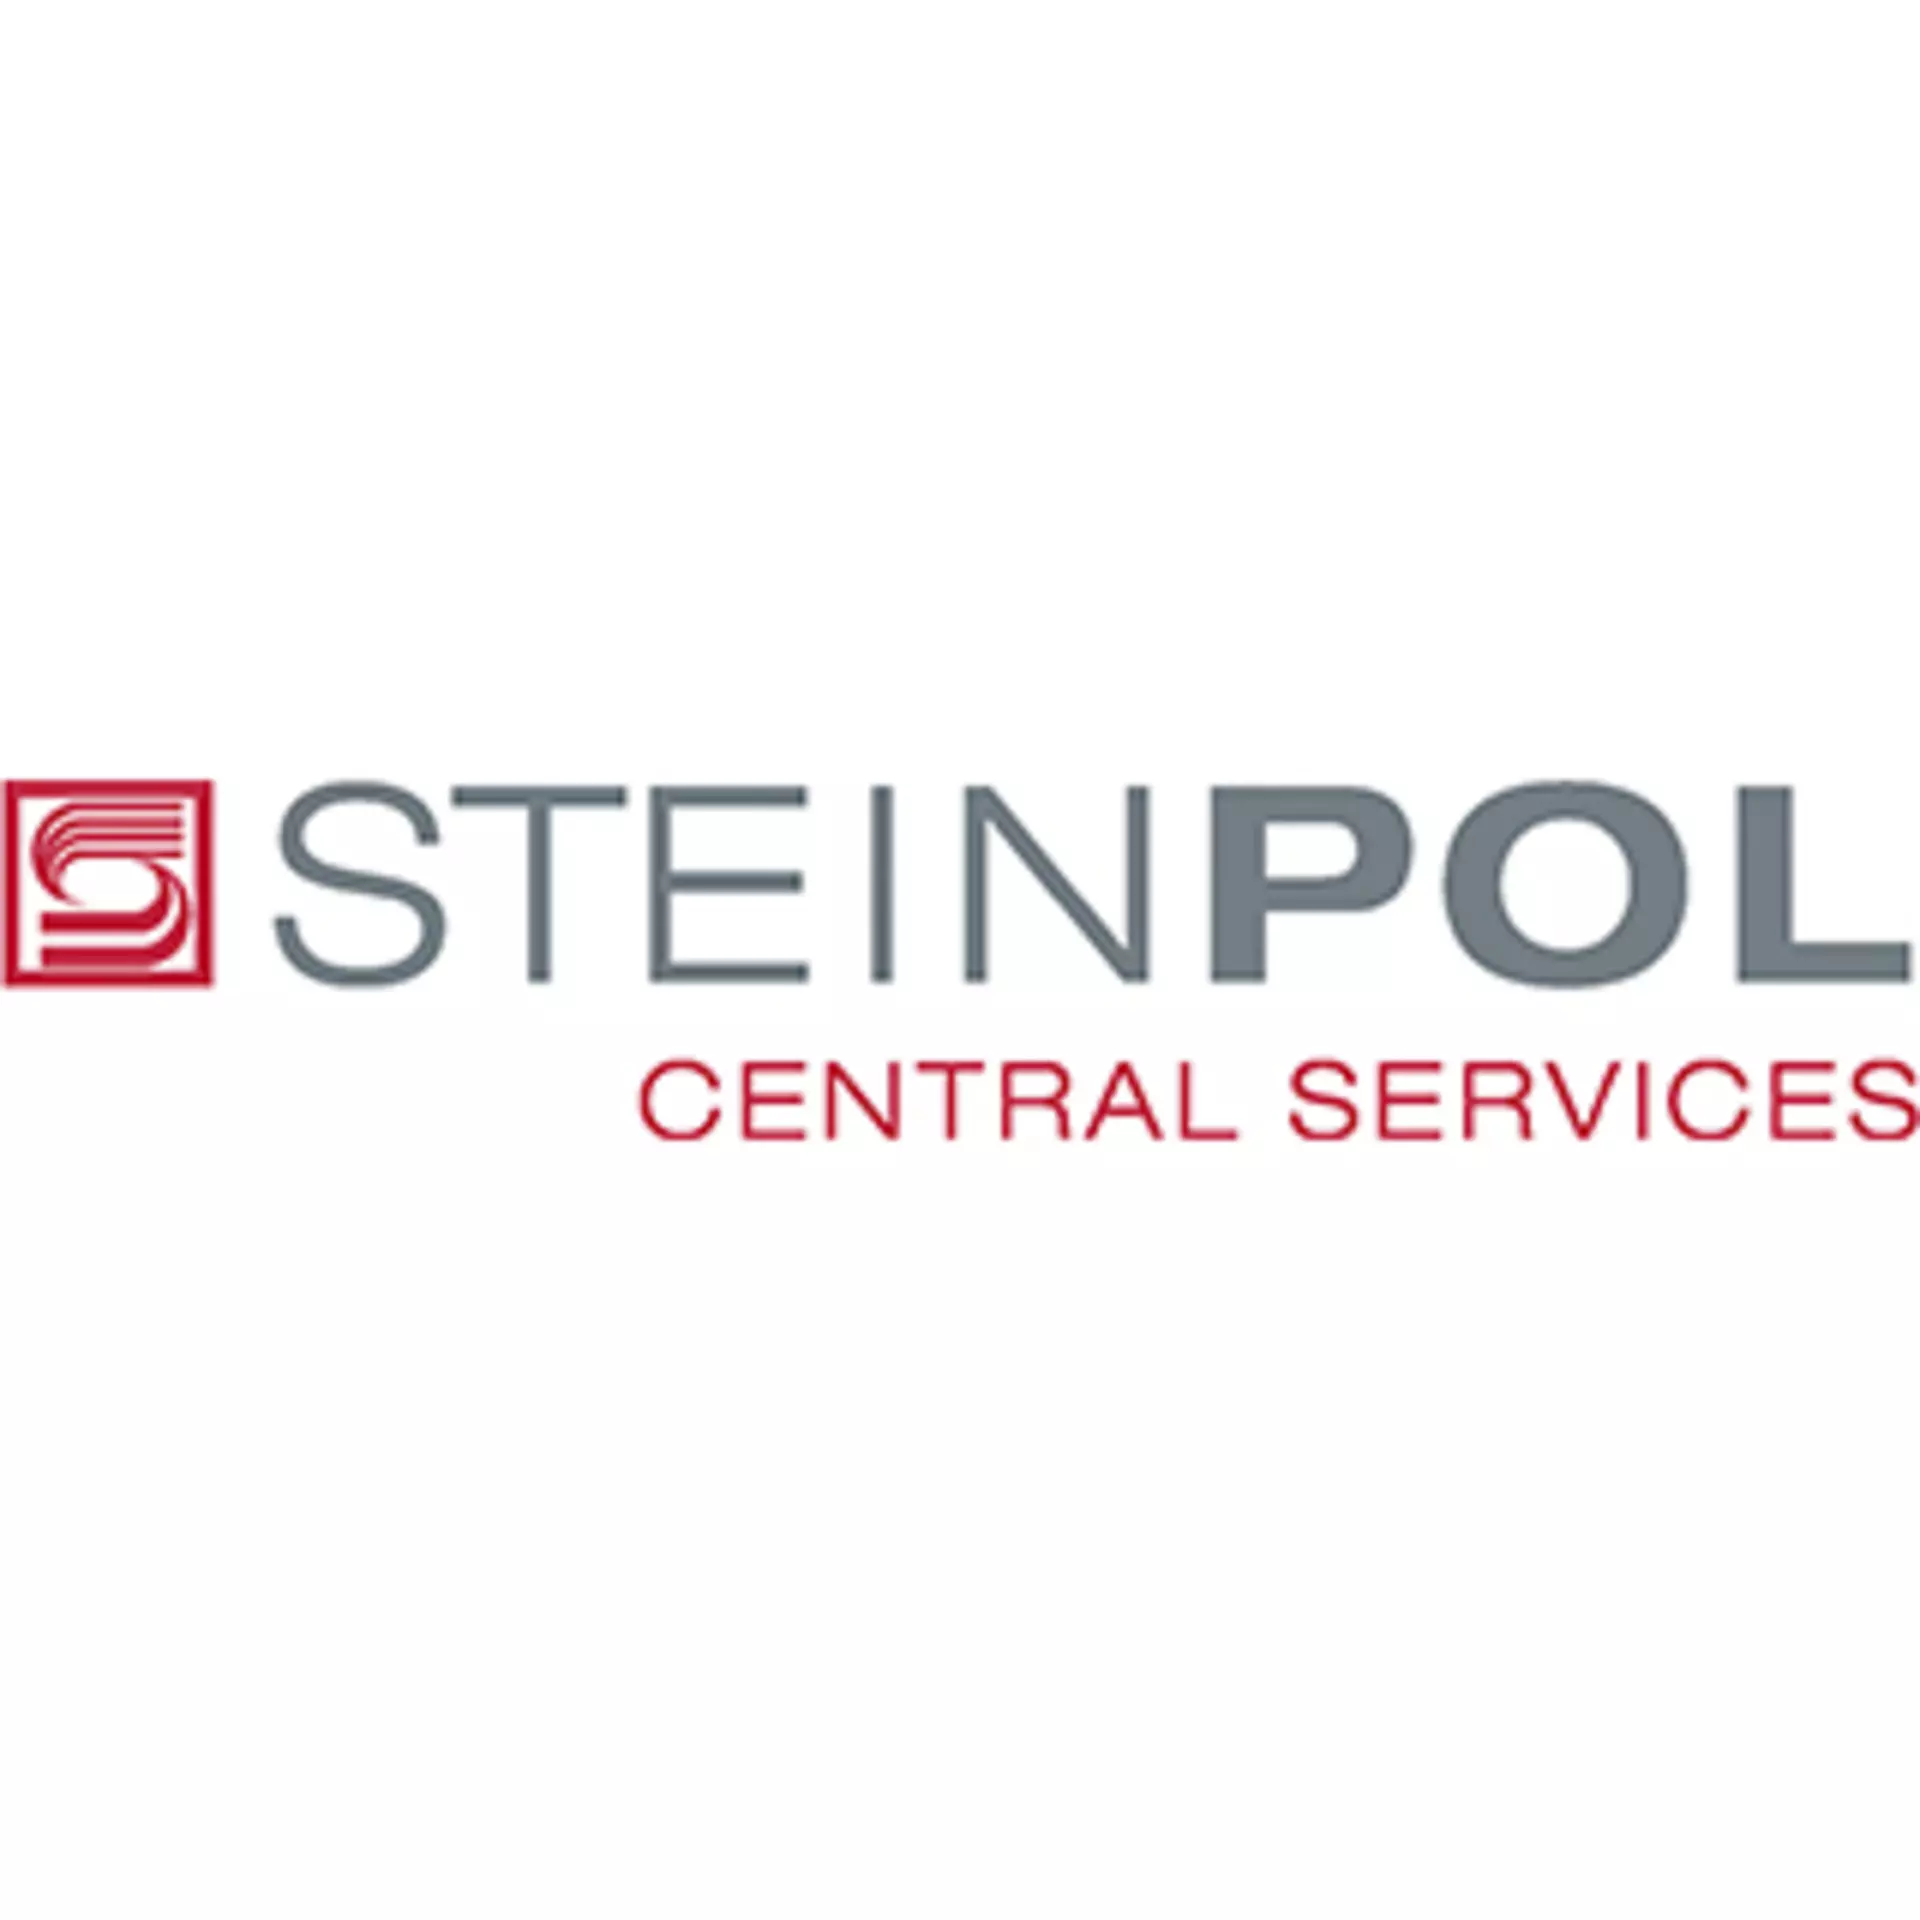 Steinpol